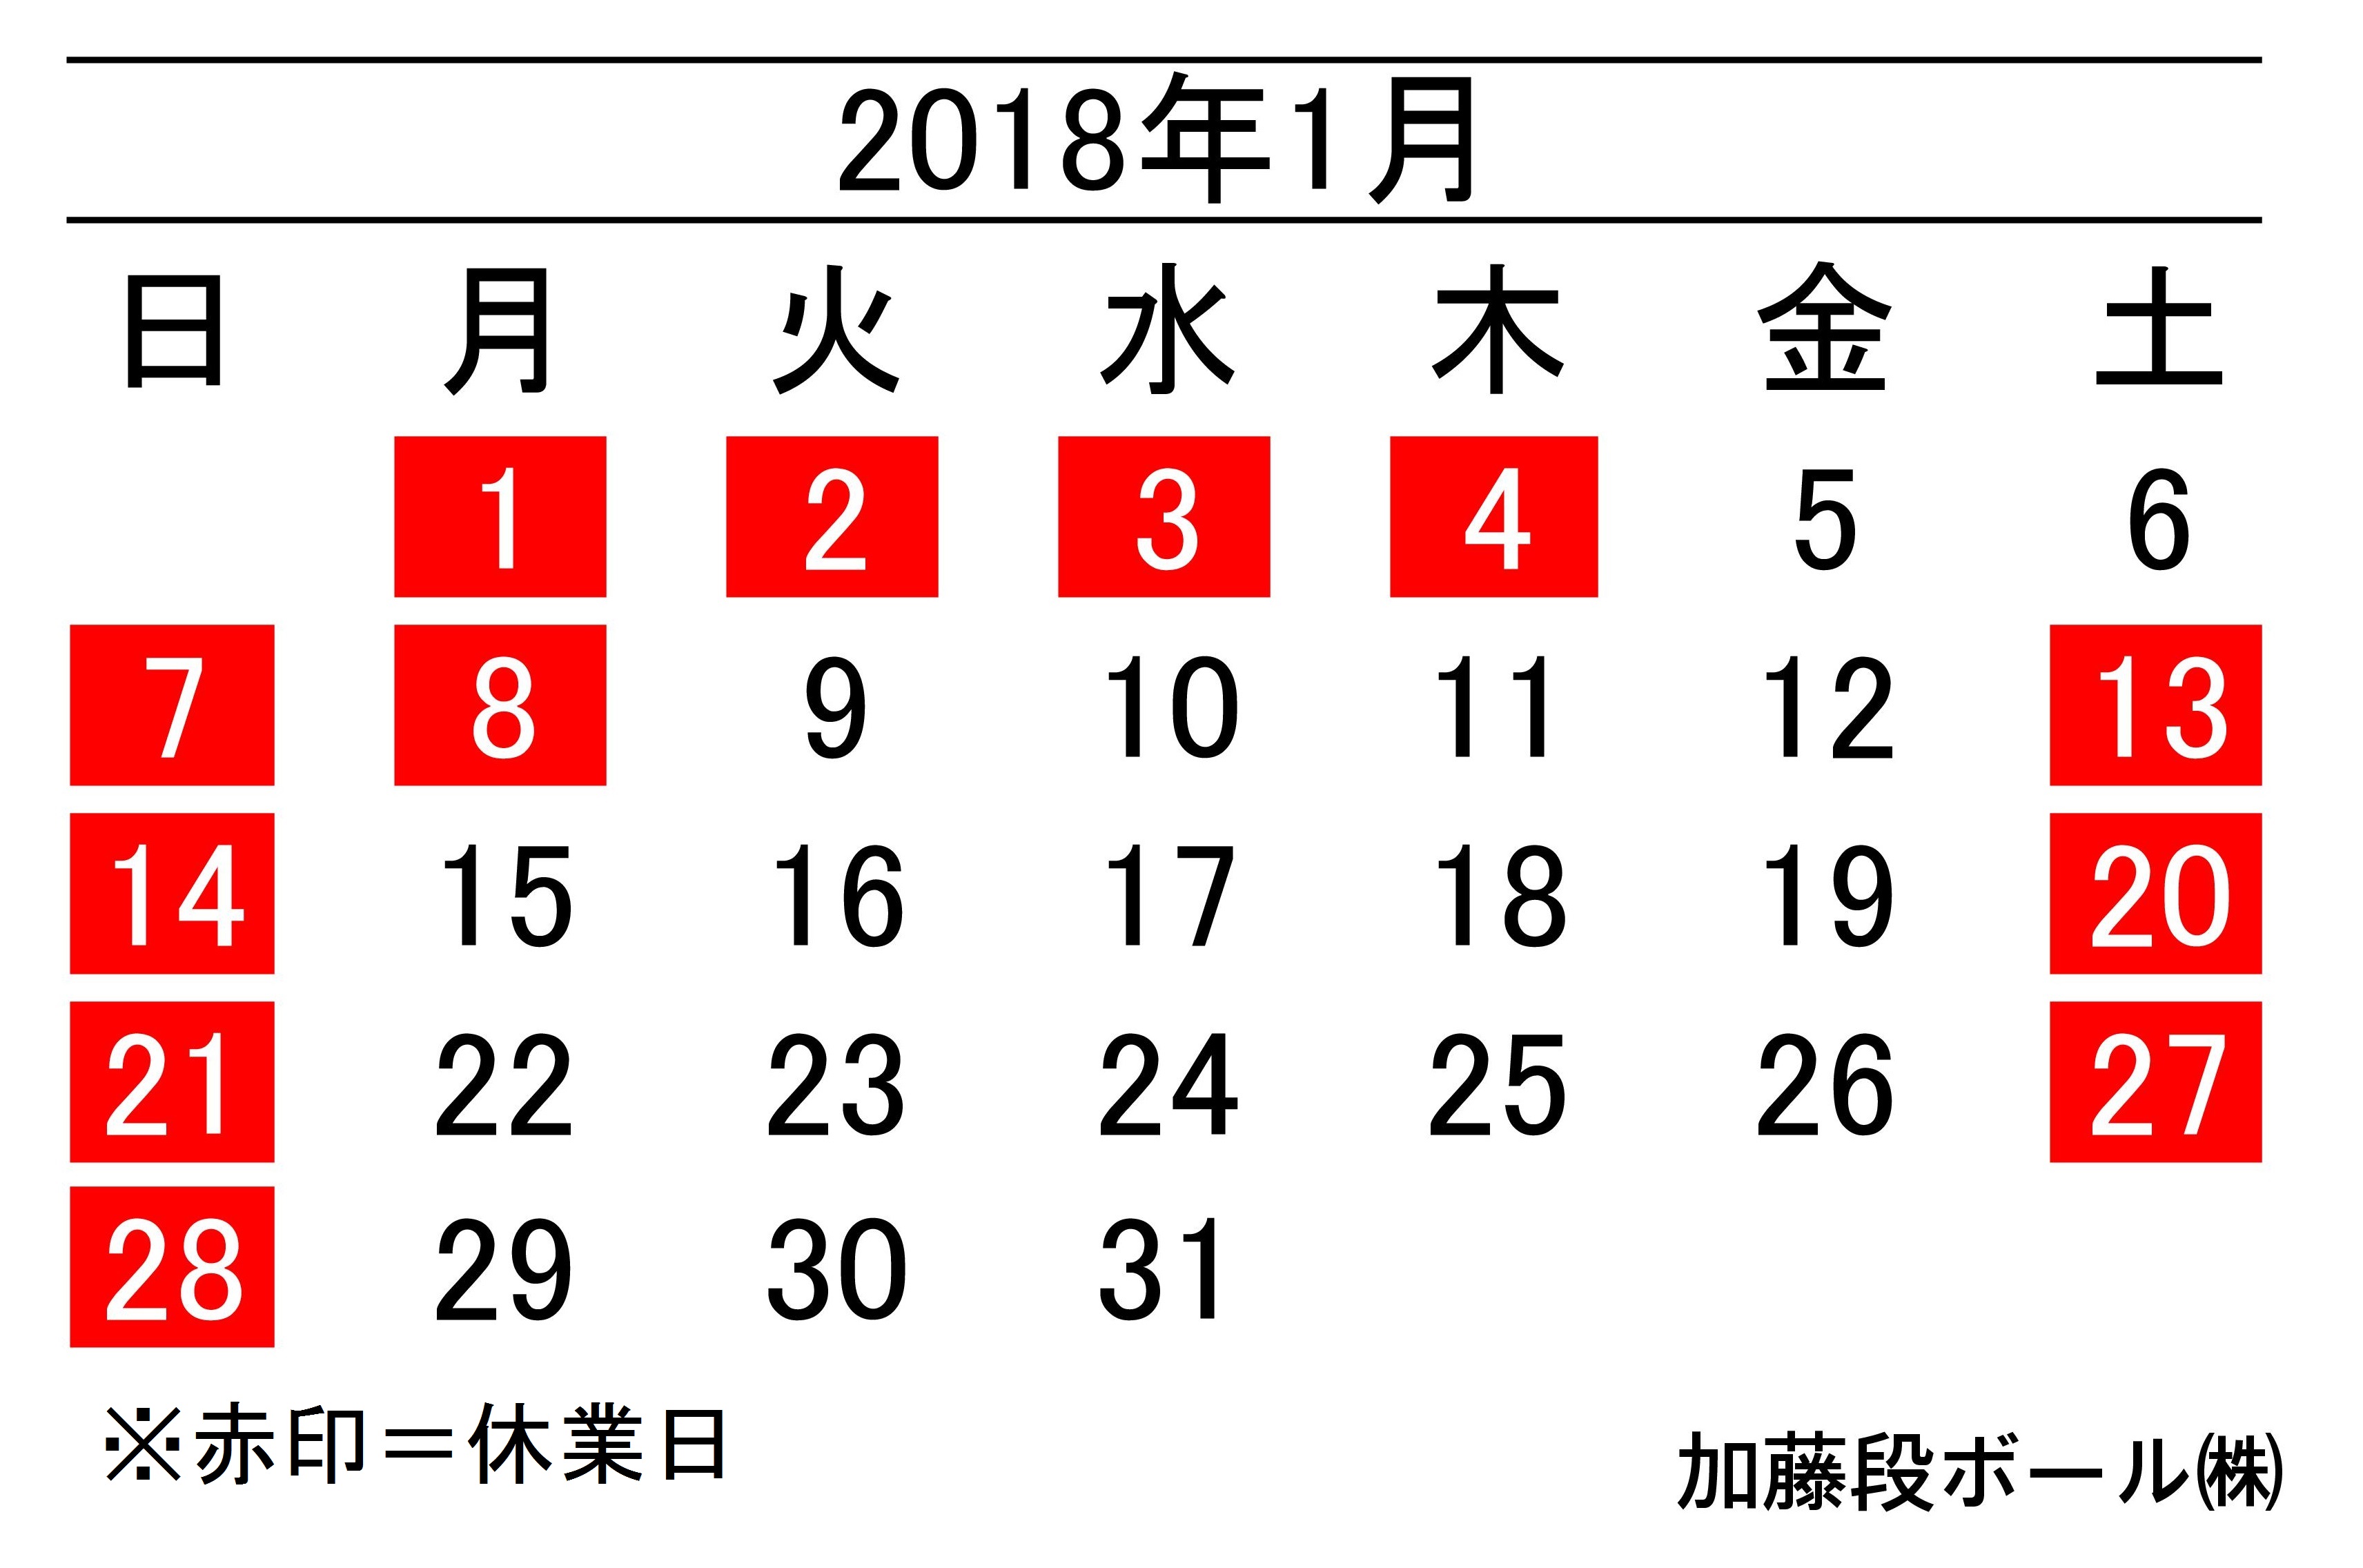 18年1月度営業日カレンダー 加藤段ボール株式会社 千葉 福島 神奈川を中心に段ボール製品 梱包資材の製造と販売